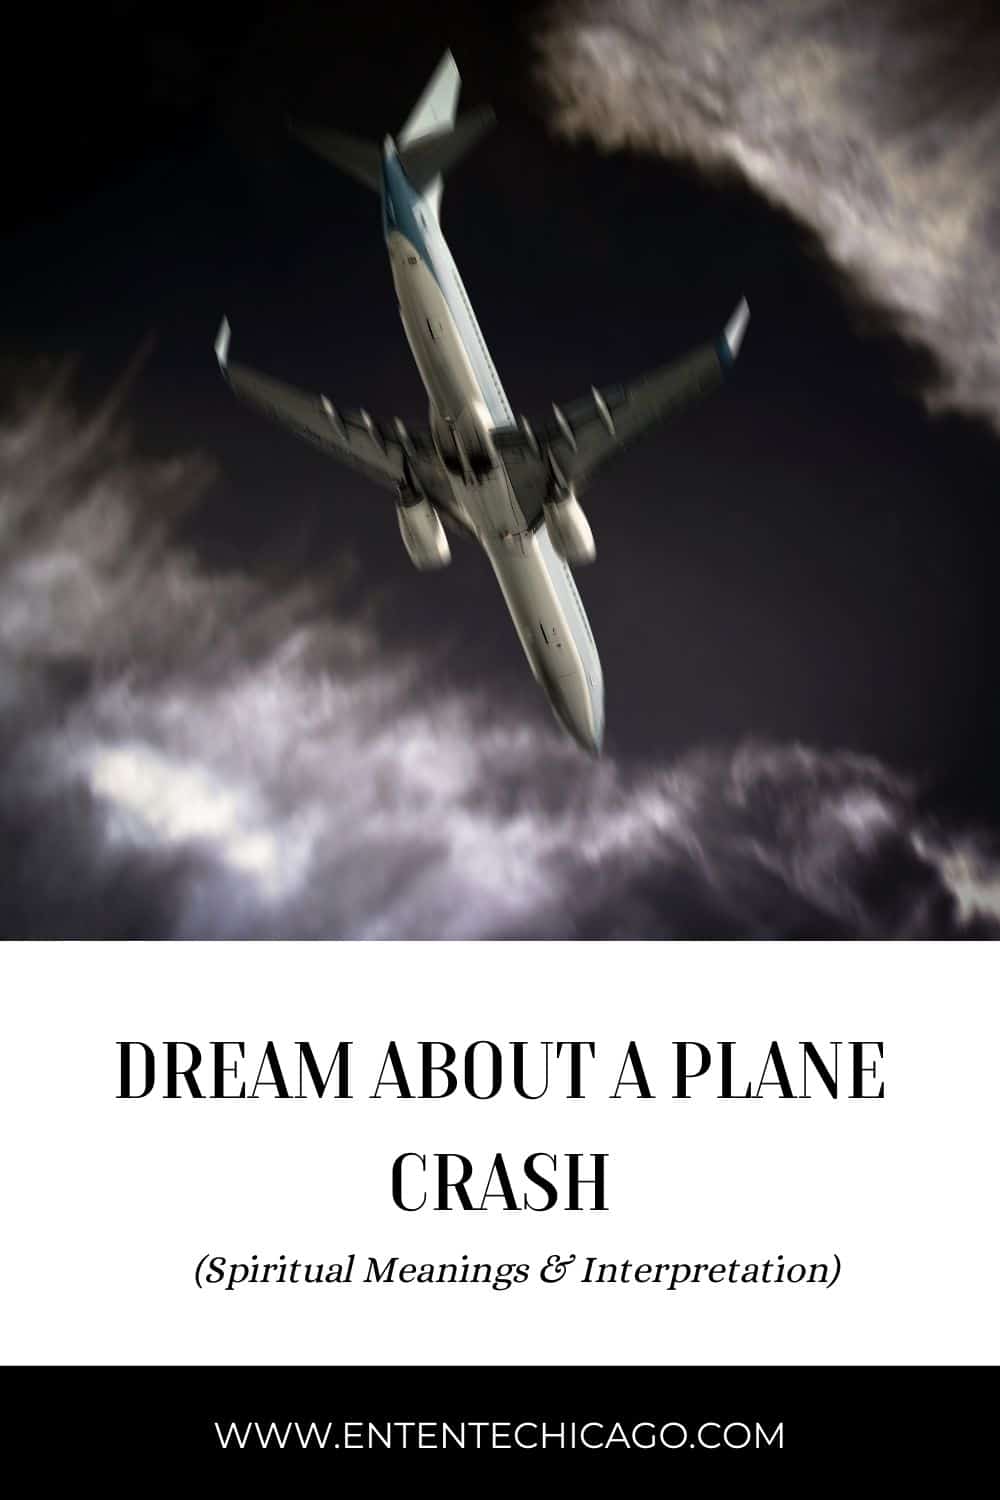  Unelma lentokoneen maahansyöksyn todistajasta (Fortunate Interpretation)